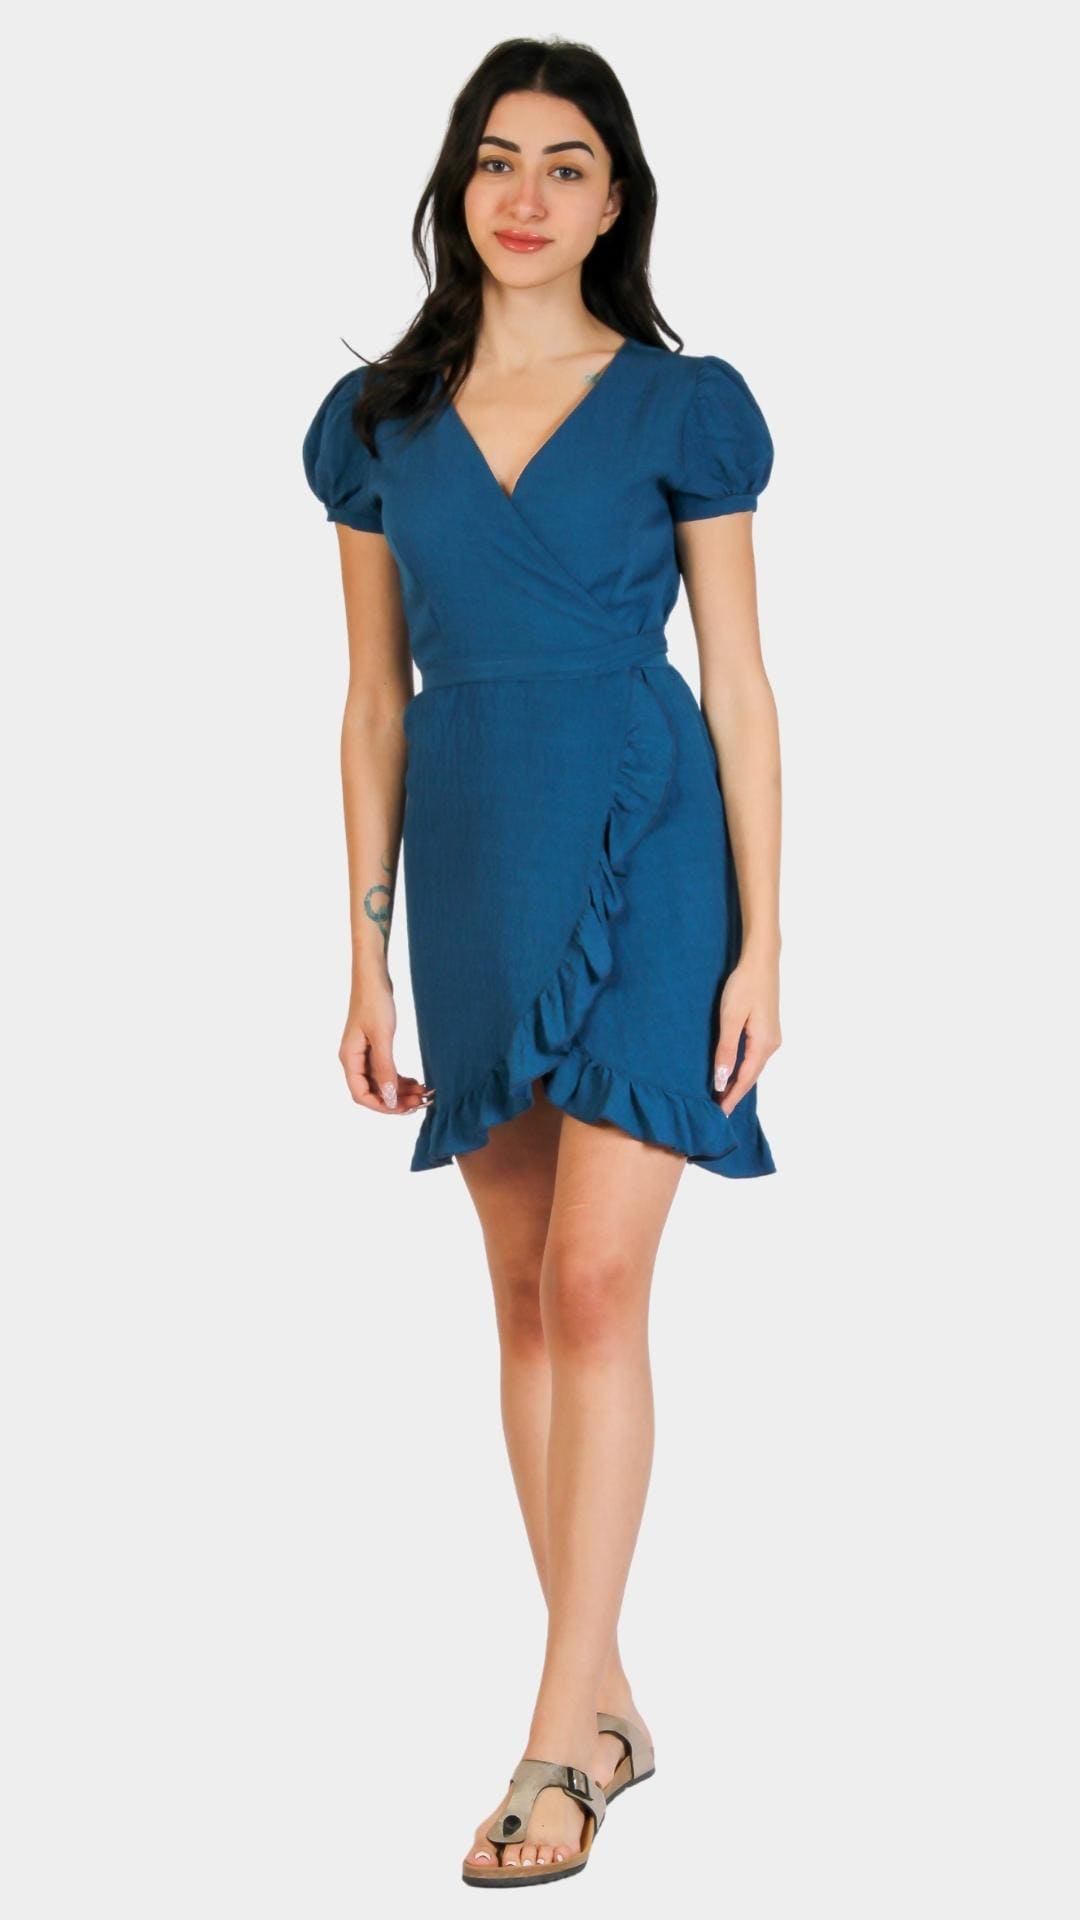 Blue short sleeve dress